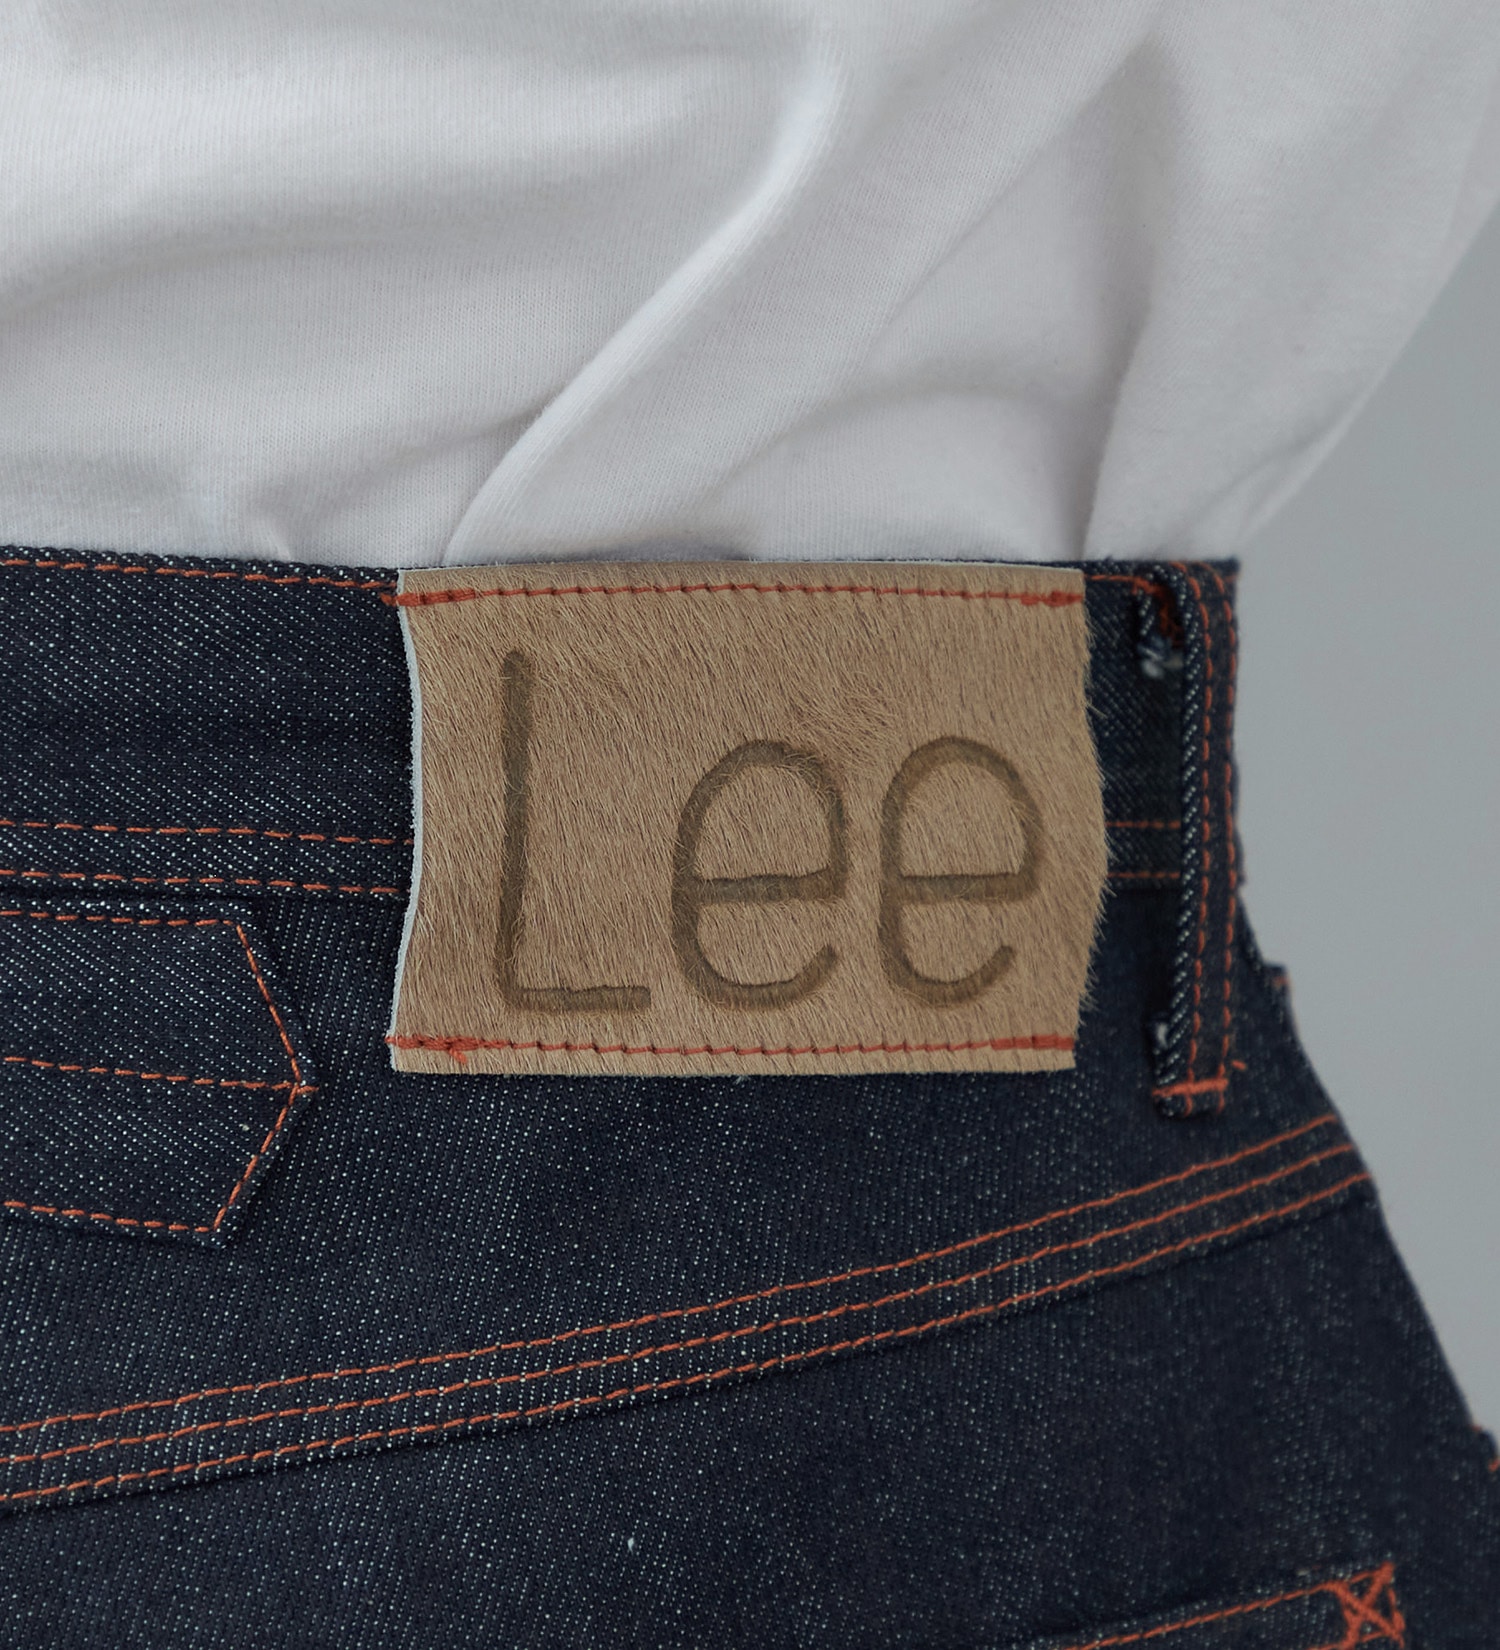 Lee(リー)の【SUPERSIZED】 100周年記念COWBOY デニムワイドパンツ|パンツ/デニムパンツ/メンズ|インディゴ未洗い